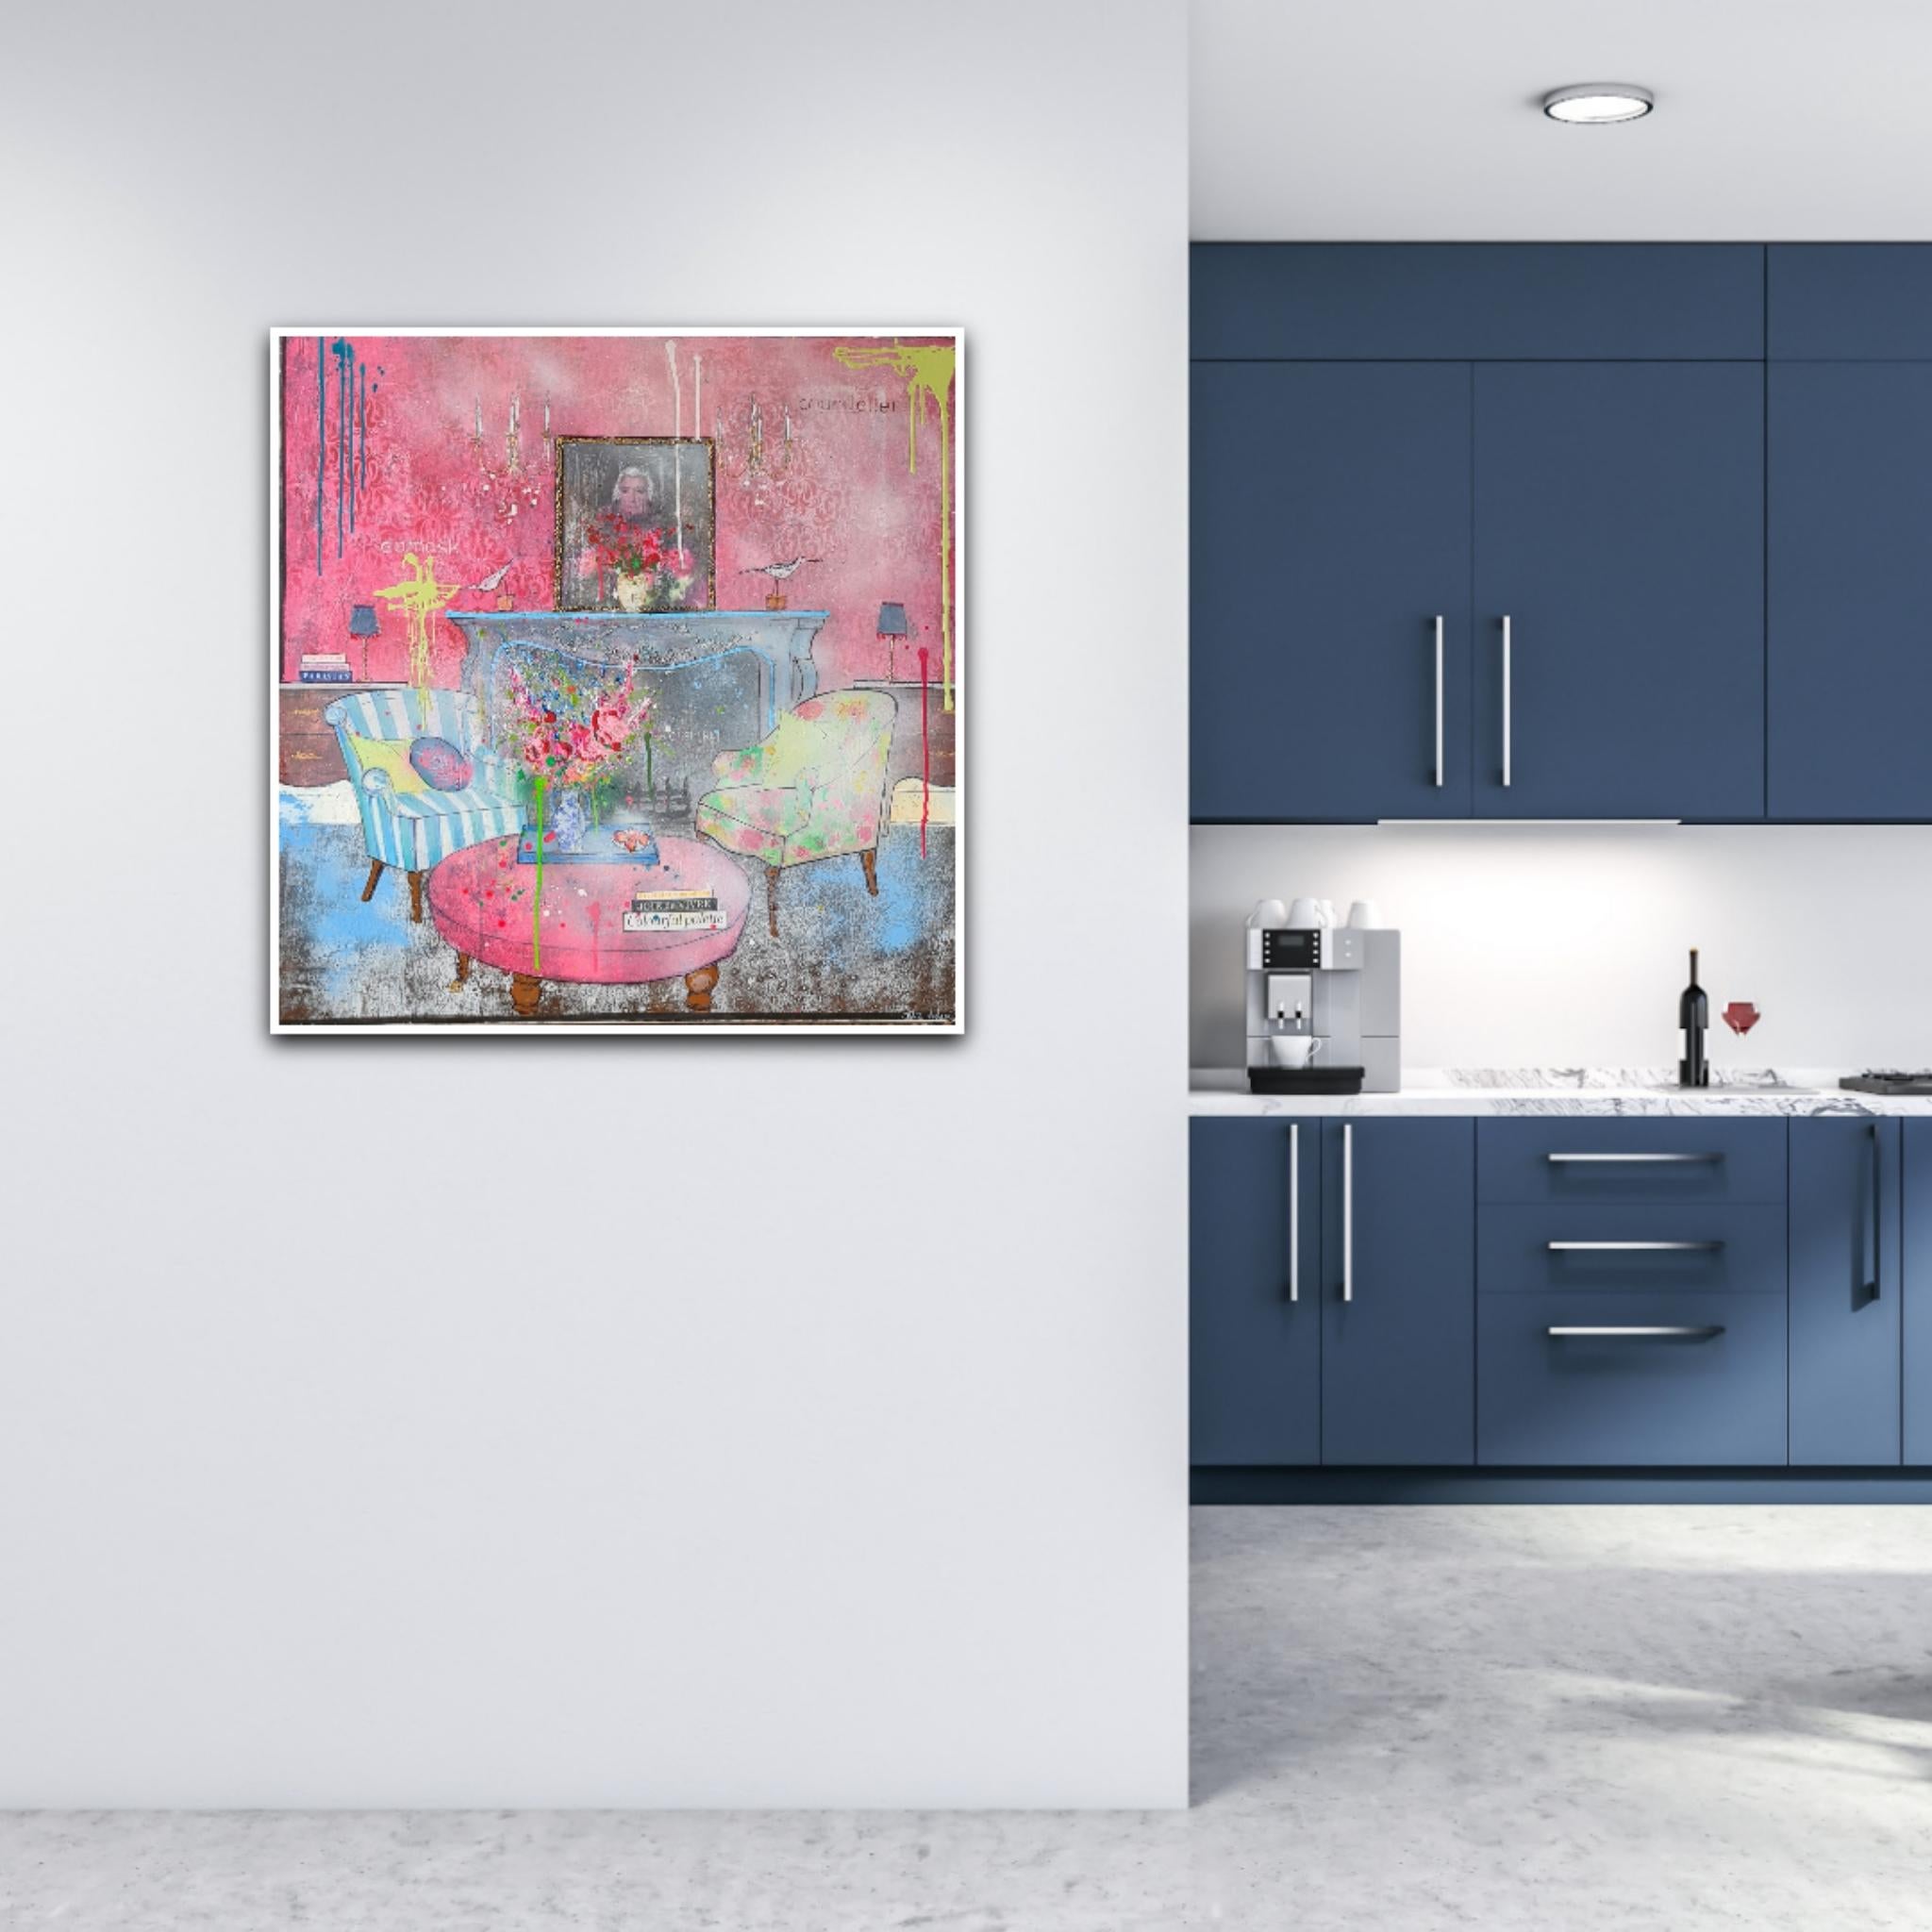 Joie de Vivre von Julia Adams ist ein 90 x 90 cm großes, quadratisches Interieur-Gemälde auf einer 25-mm-Leinwand mit tiefen Rändern aus ihrer Serie Interior Spaces. Die Farben, die sie verwendet hat, sind leuchtende Rosa-, Blau- und Grüntöne, die